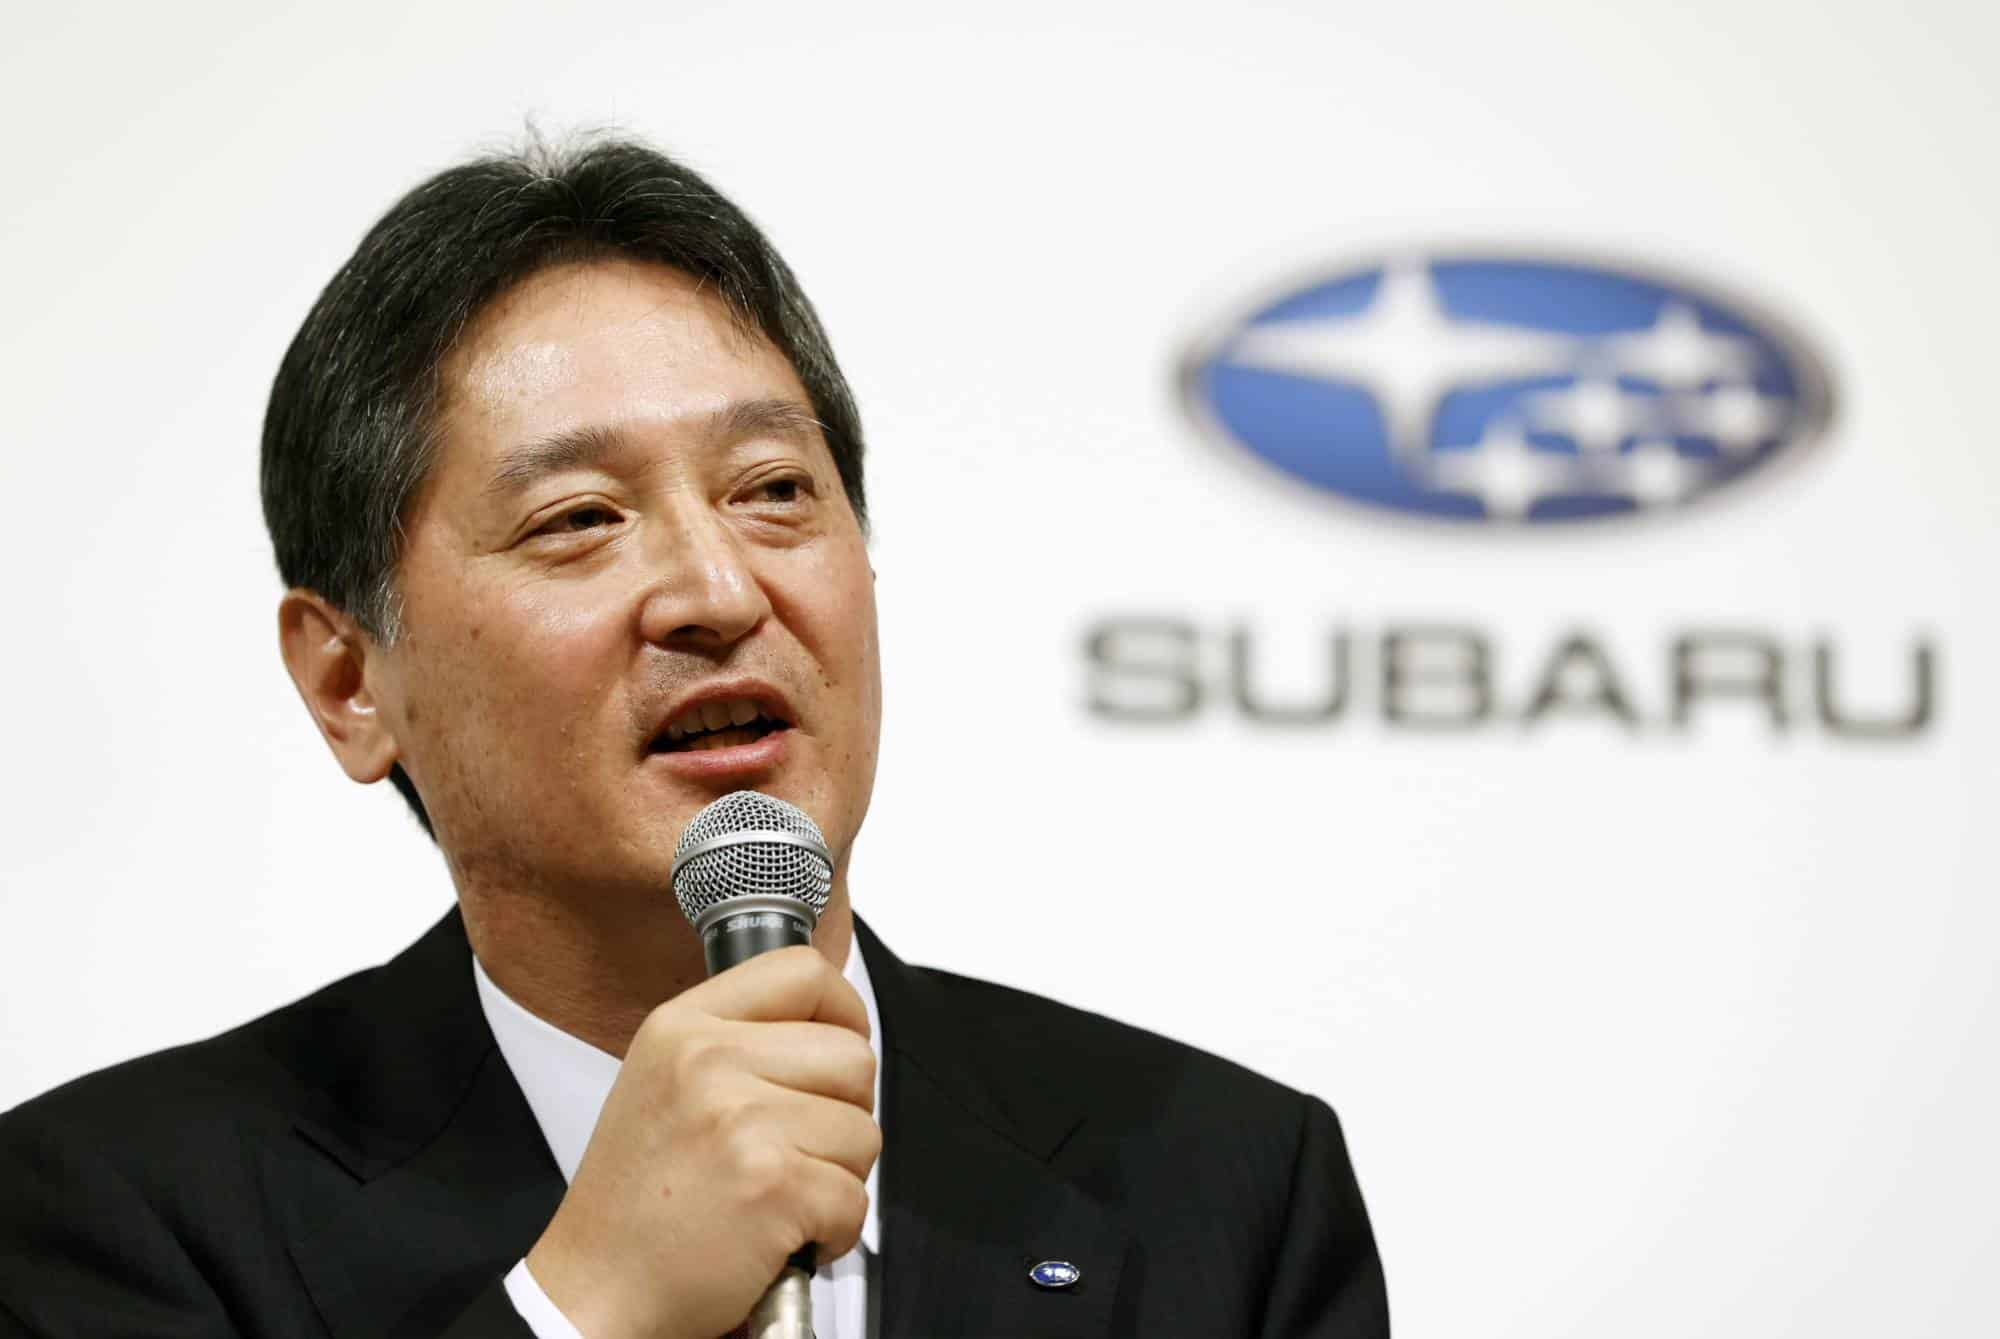 سوبارو تُعيّن رئيس تنفيذي جديد للمنافسة في سوق السيارات الكهربائية